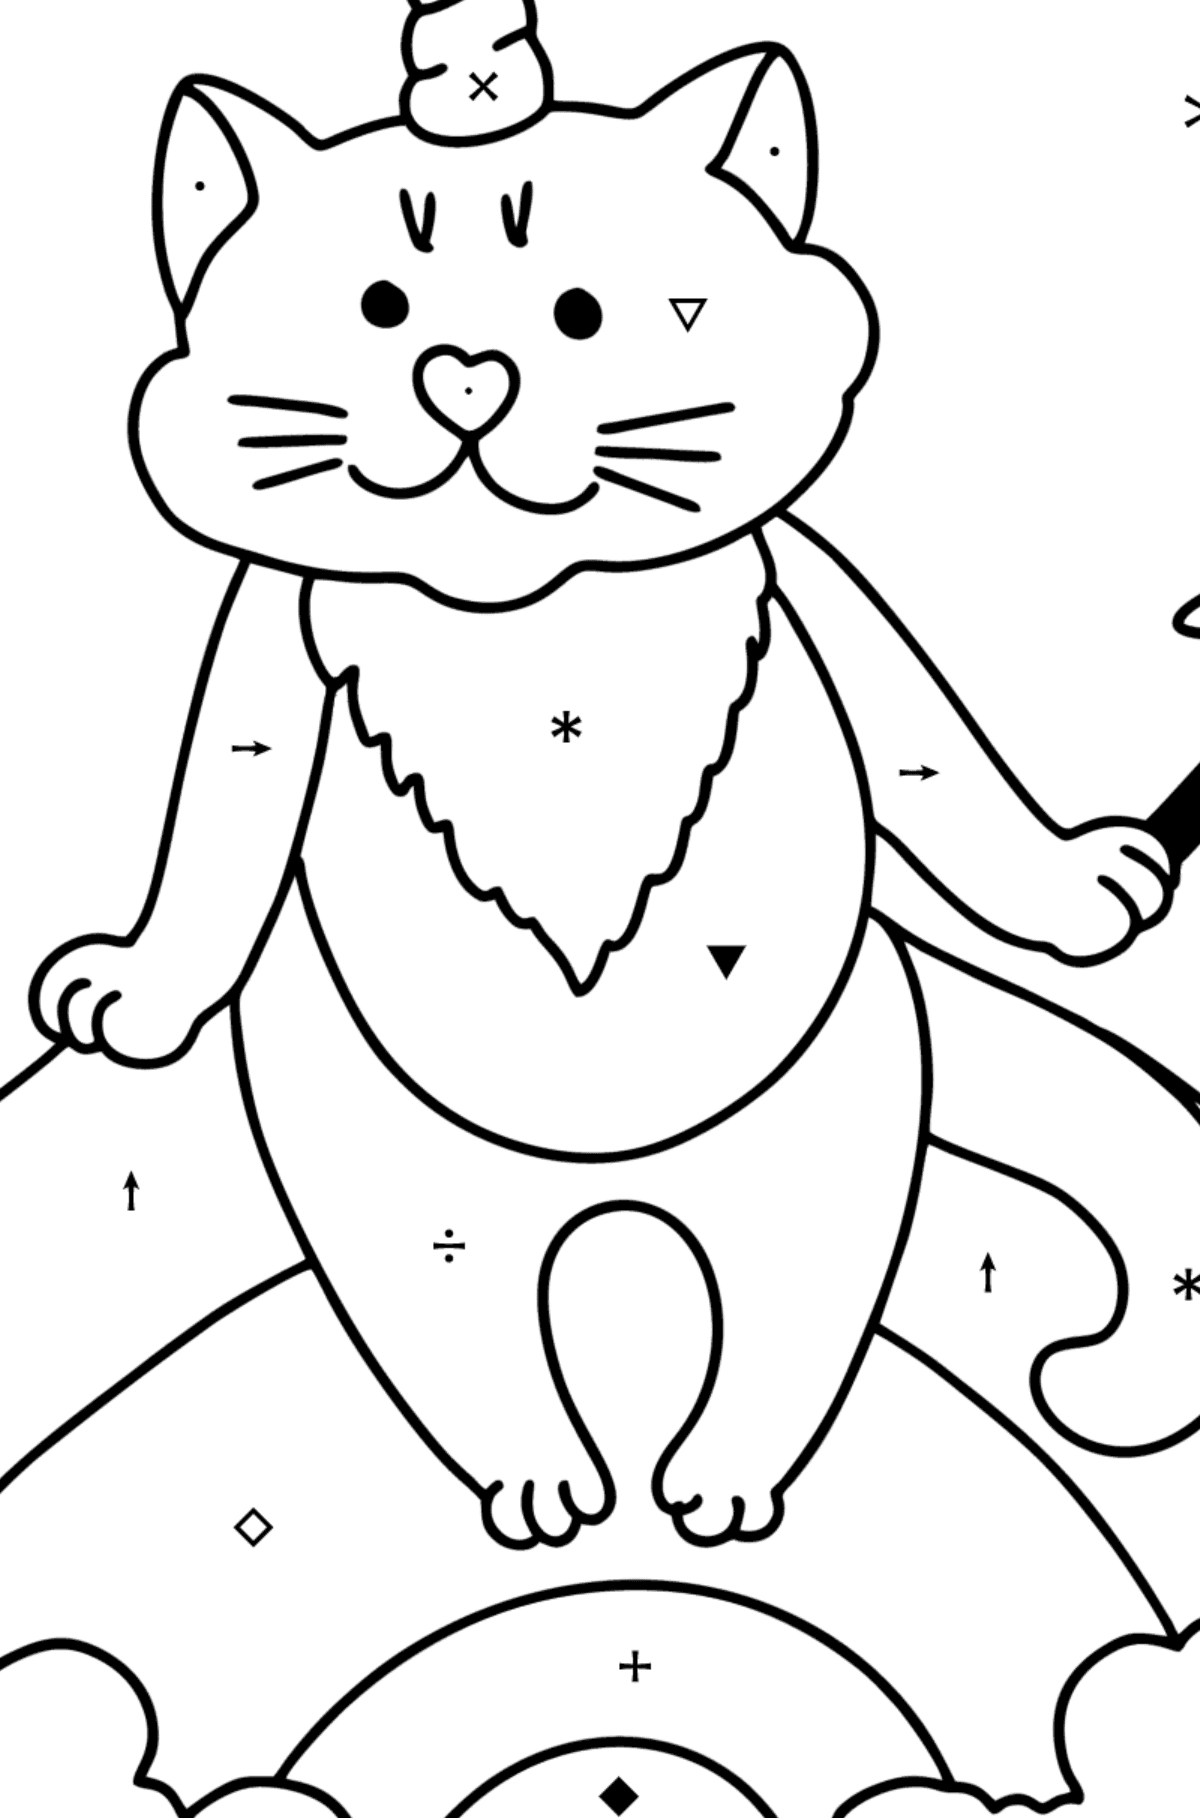 Kolorowanka Kotek Jednorożec - Kolorowanie według symboli dla dzieci